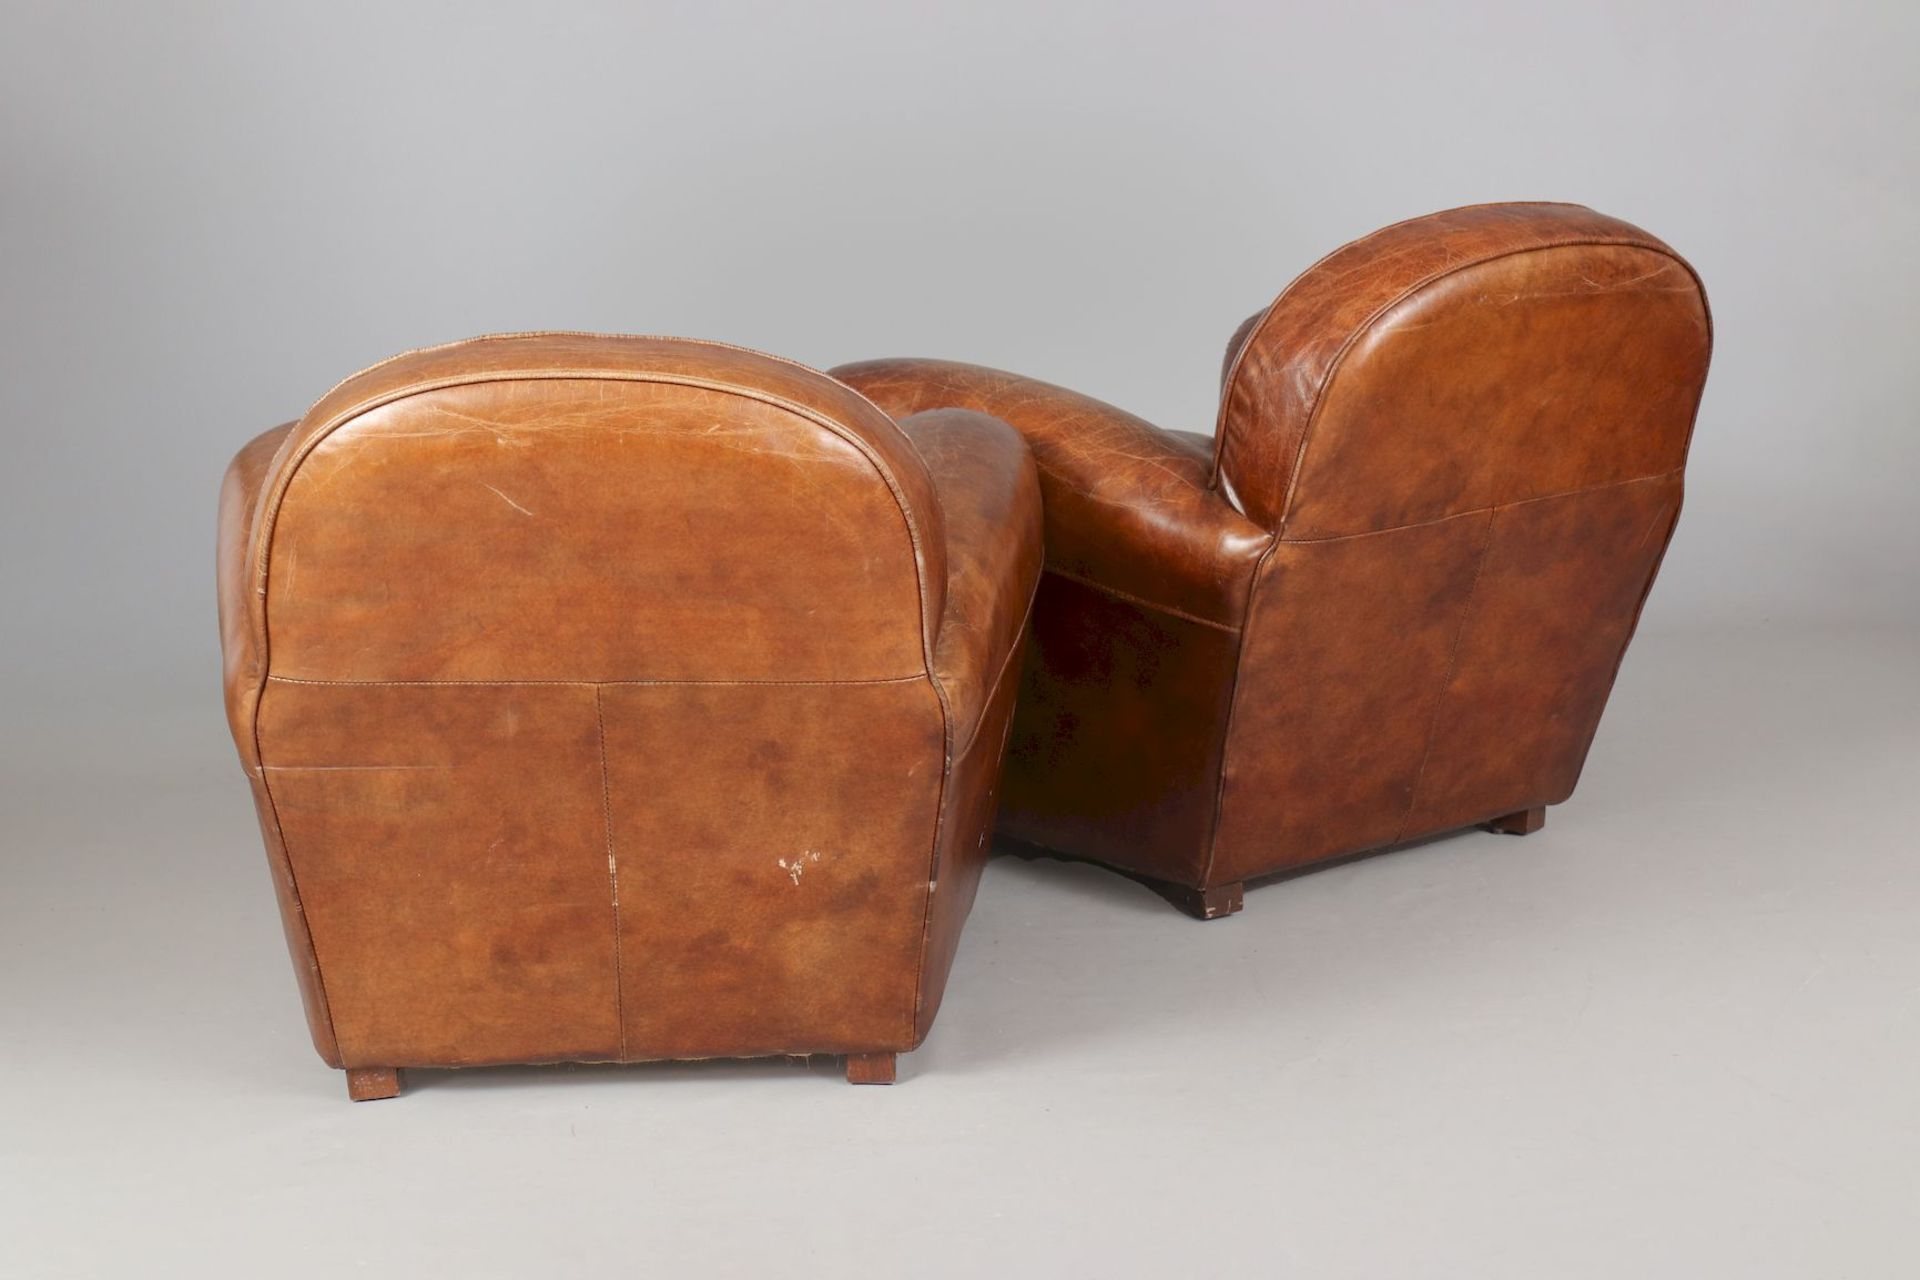 Paar ¨Club Chairs¨ im Stile des Art Deco - Bild 2 aus 5